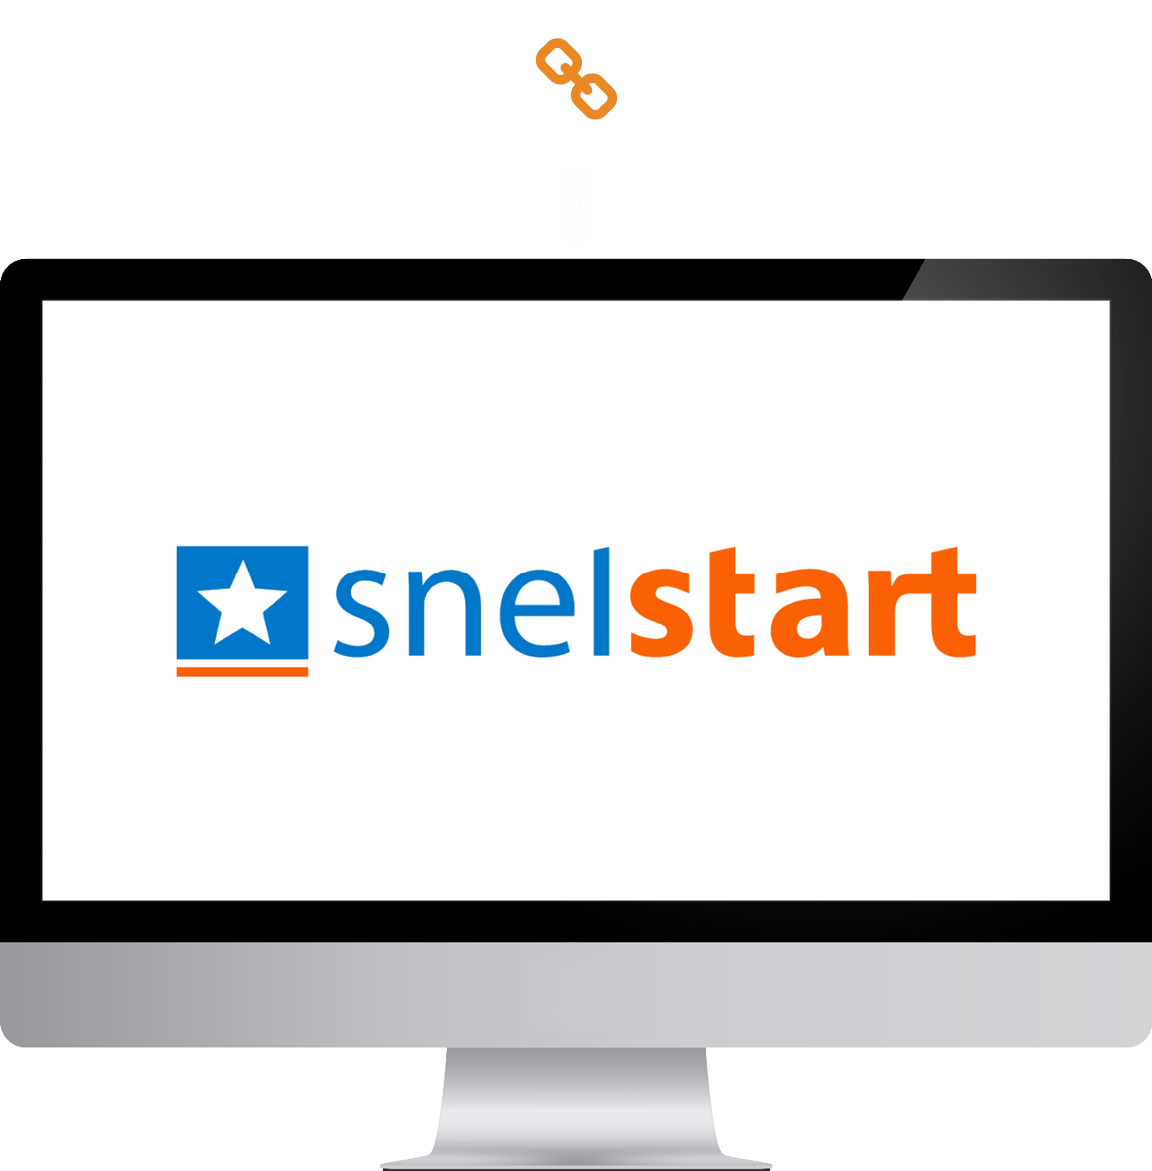 SnelStart logo